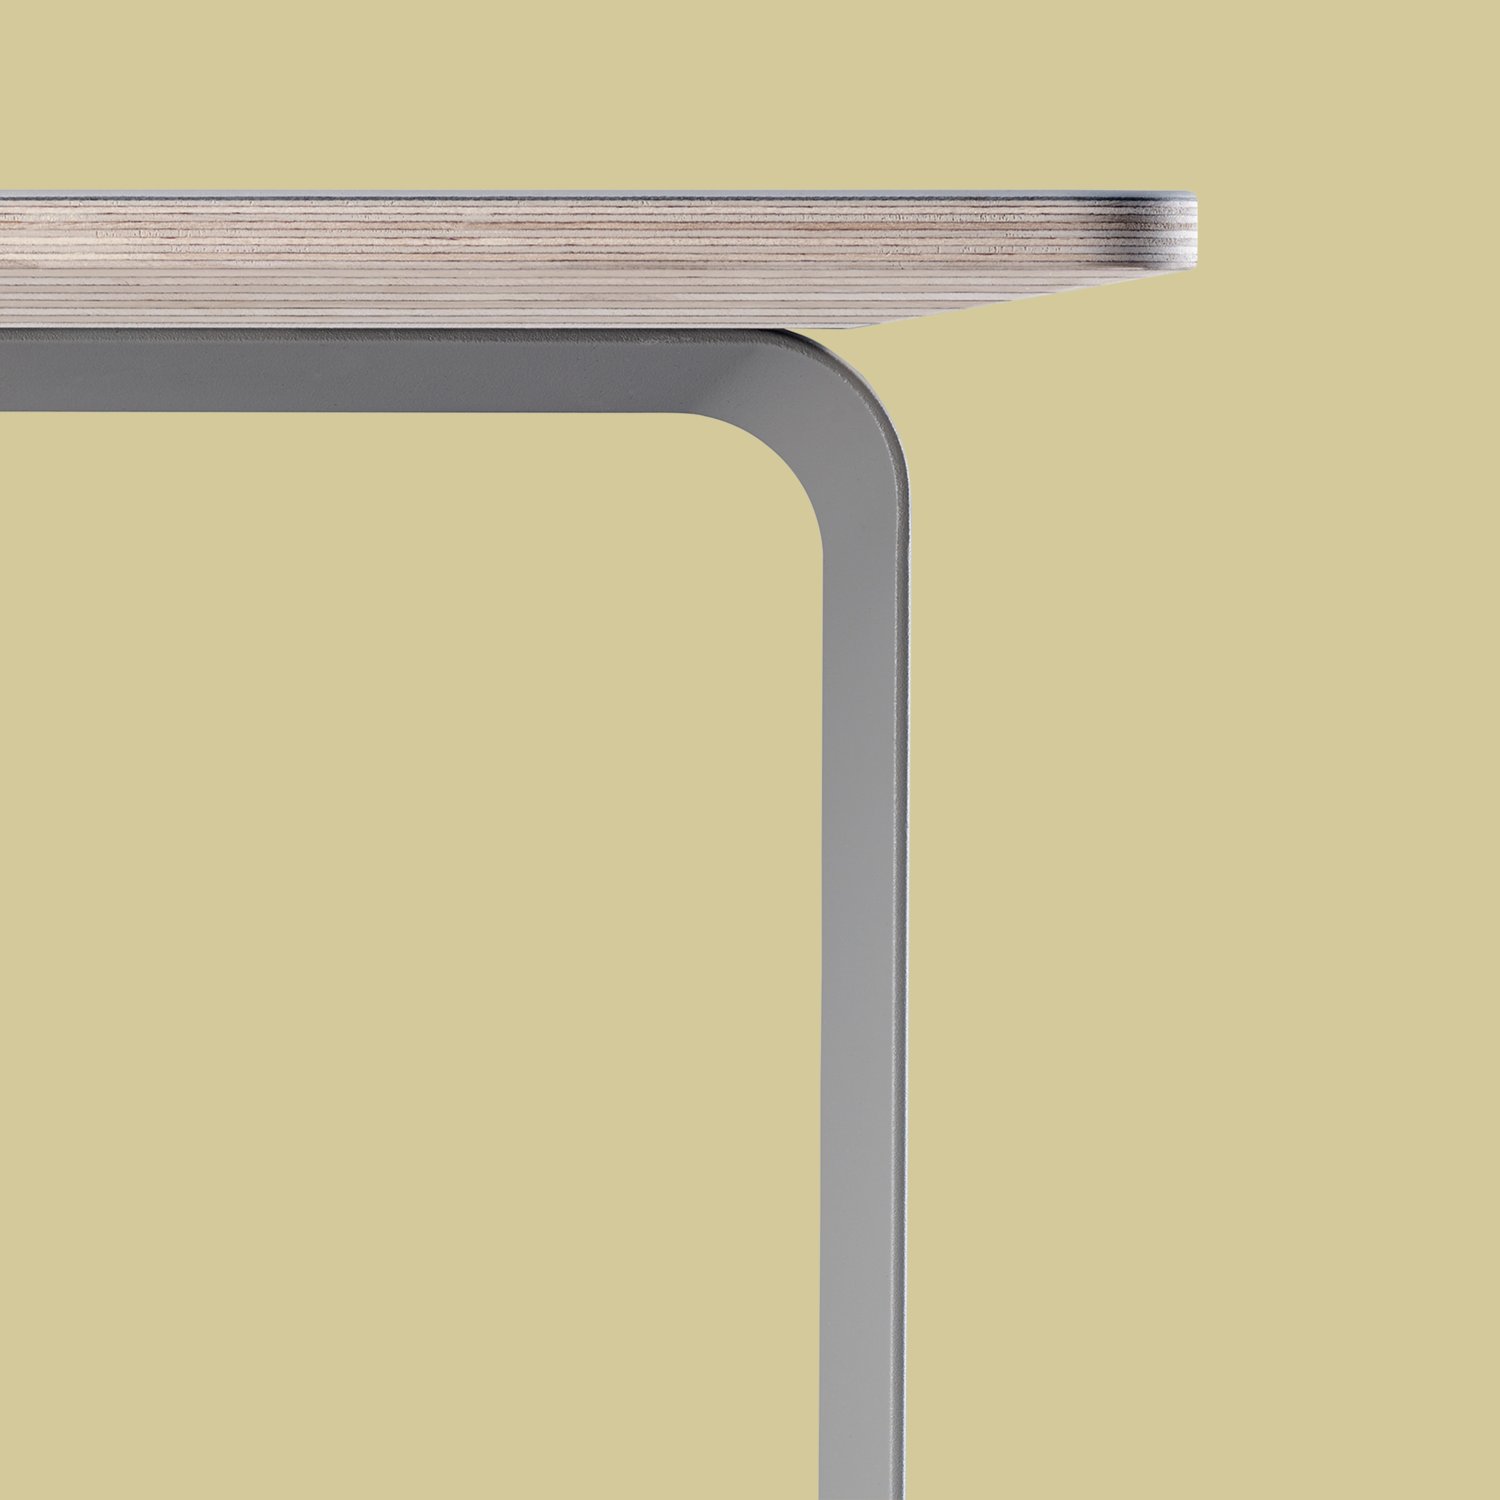 70/70 Tisch in Grau / Grau präsentiert im Onlineshop von KAQTU Design AG. Esstisch ist von Muuto